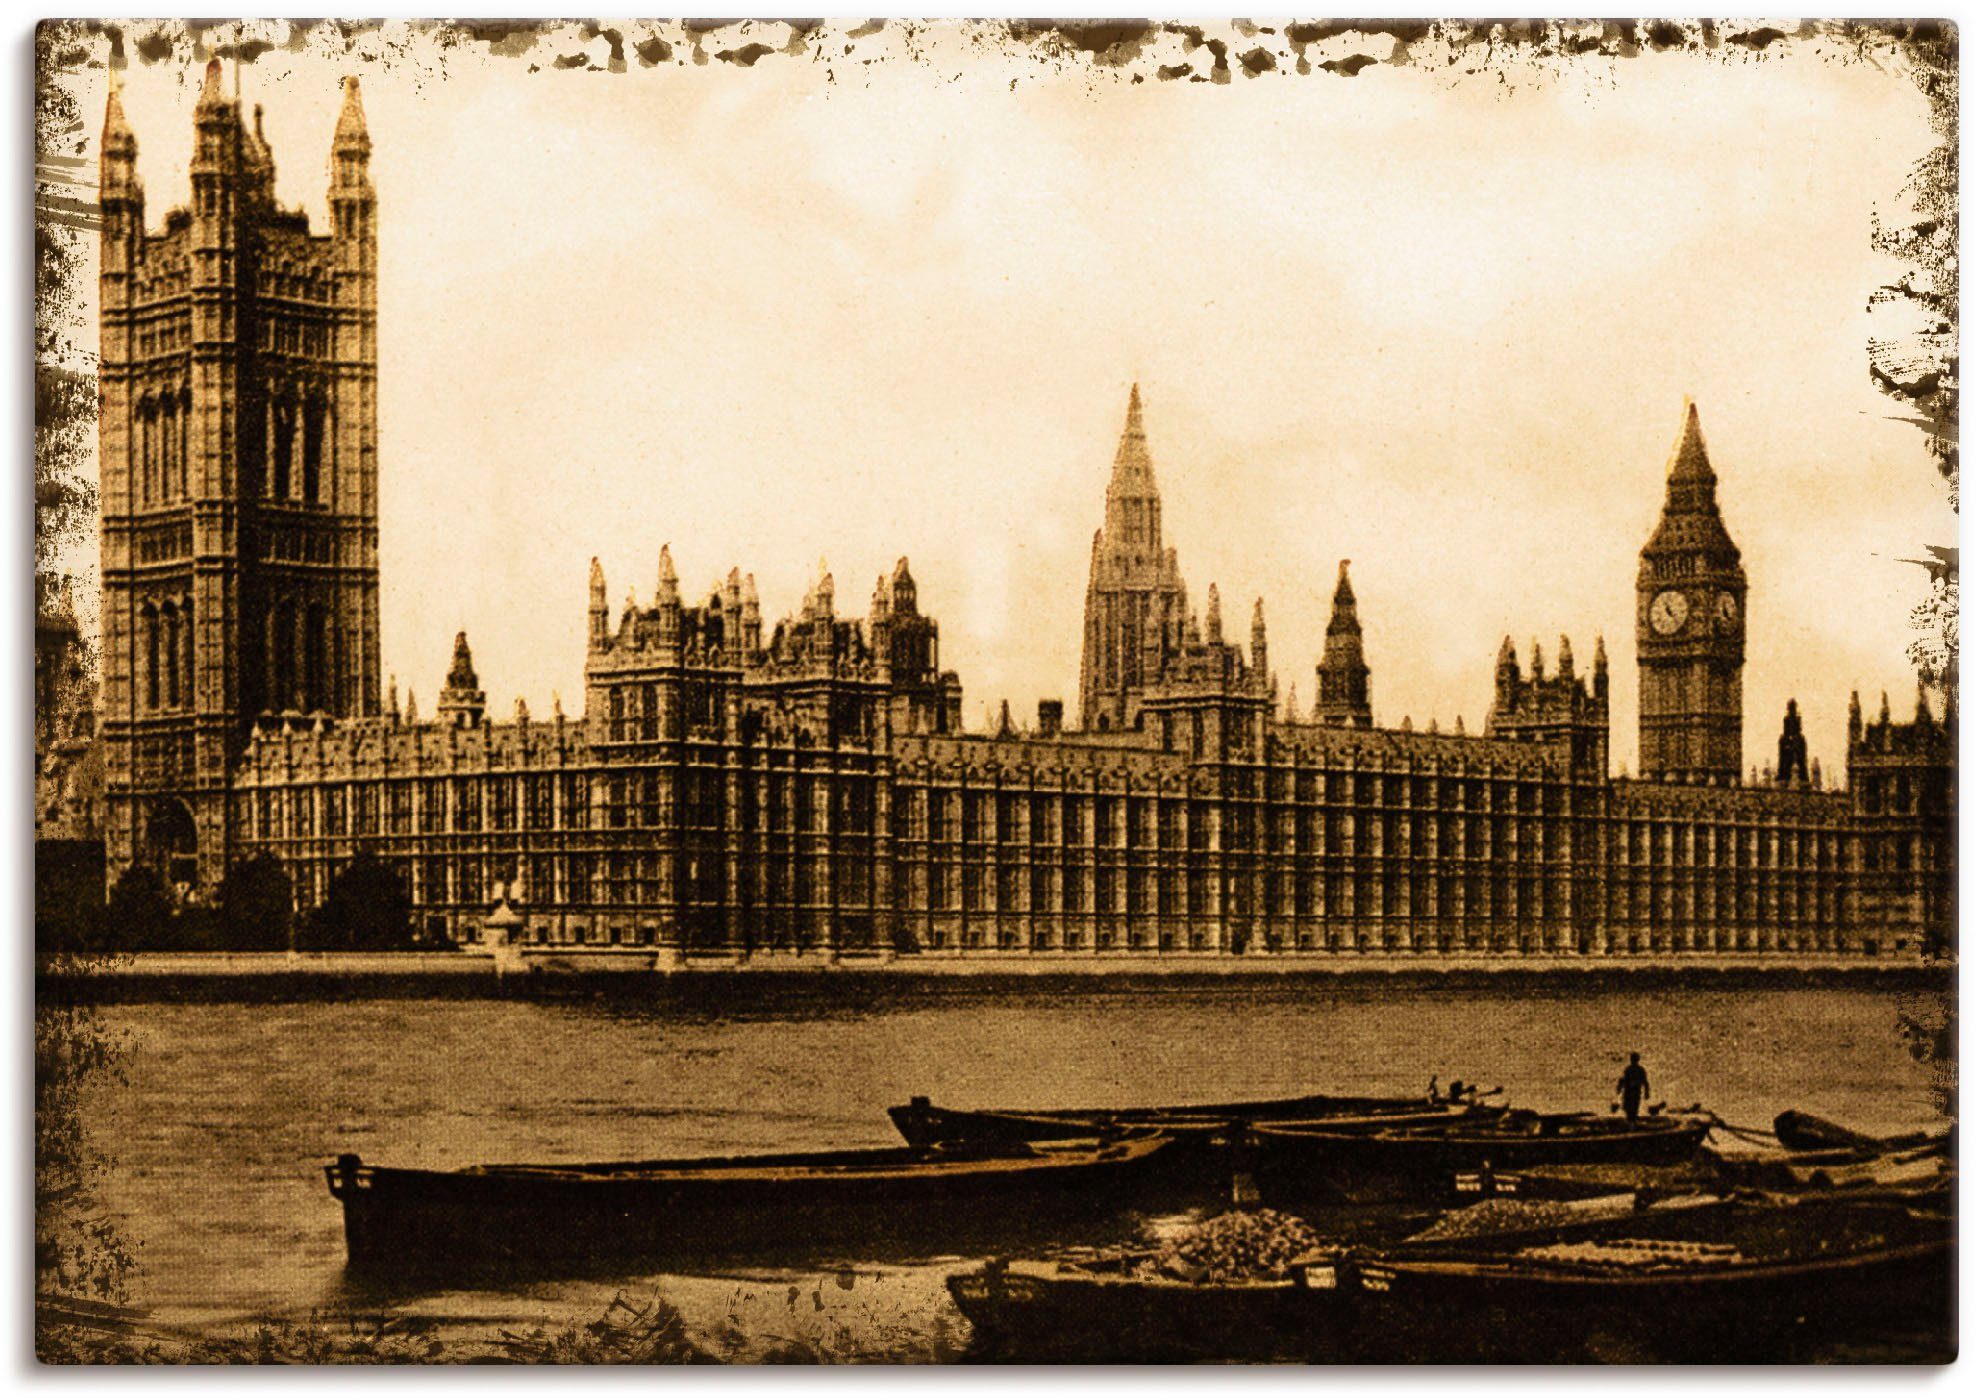 Artland Artprint Londen: House of Parliament in vele afmetingen & productsoorten -artprint op linnen, poster, muursticker / wandfolie ook geschikt voor de badkamer (1 stuk)